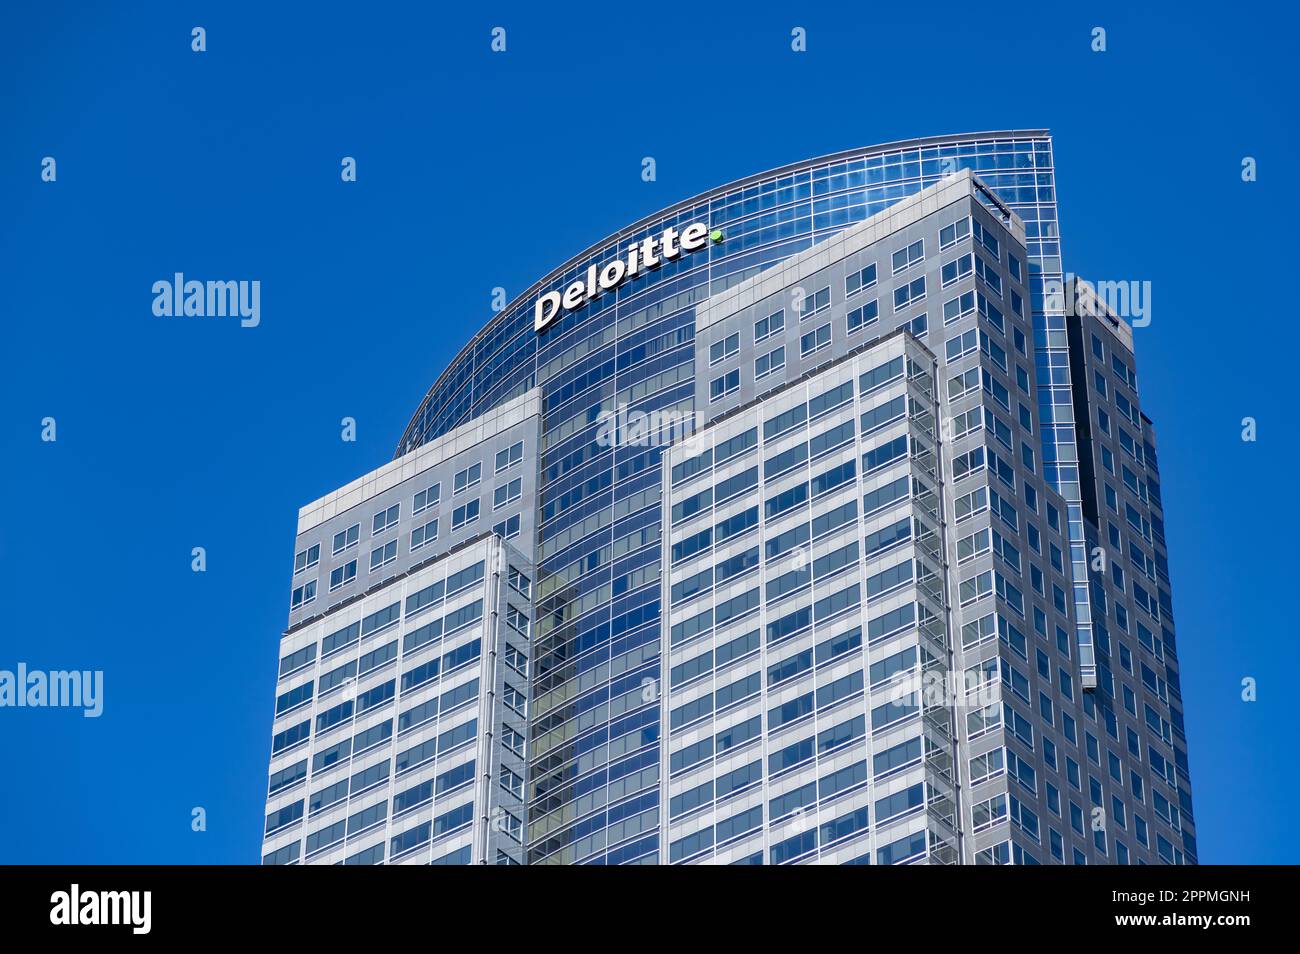 Der Turm der Gasfirma oder das Deloitte-Gebäude Stockfoto